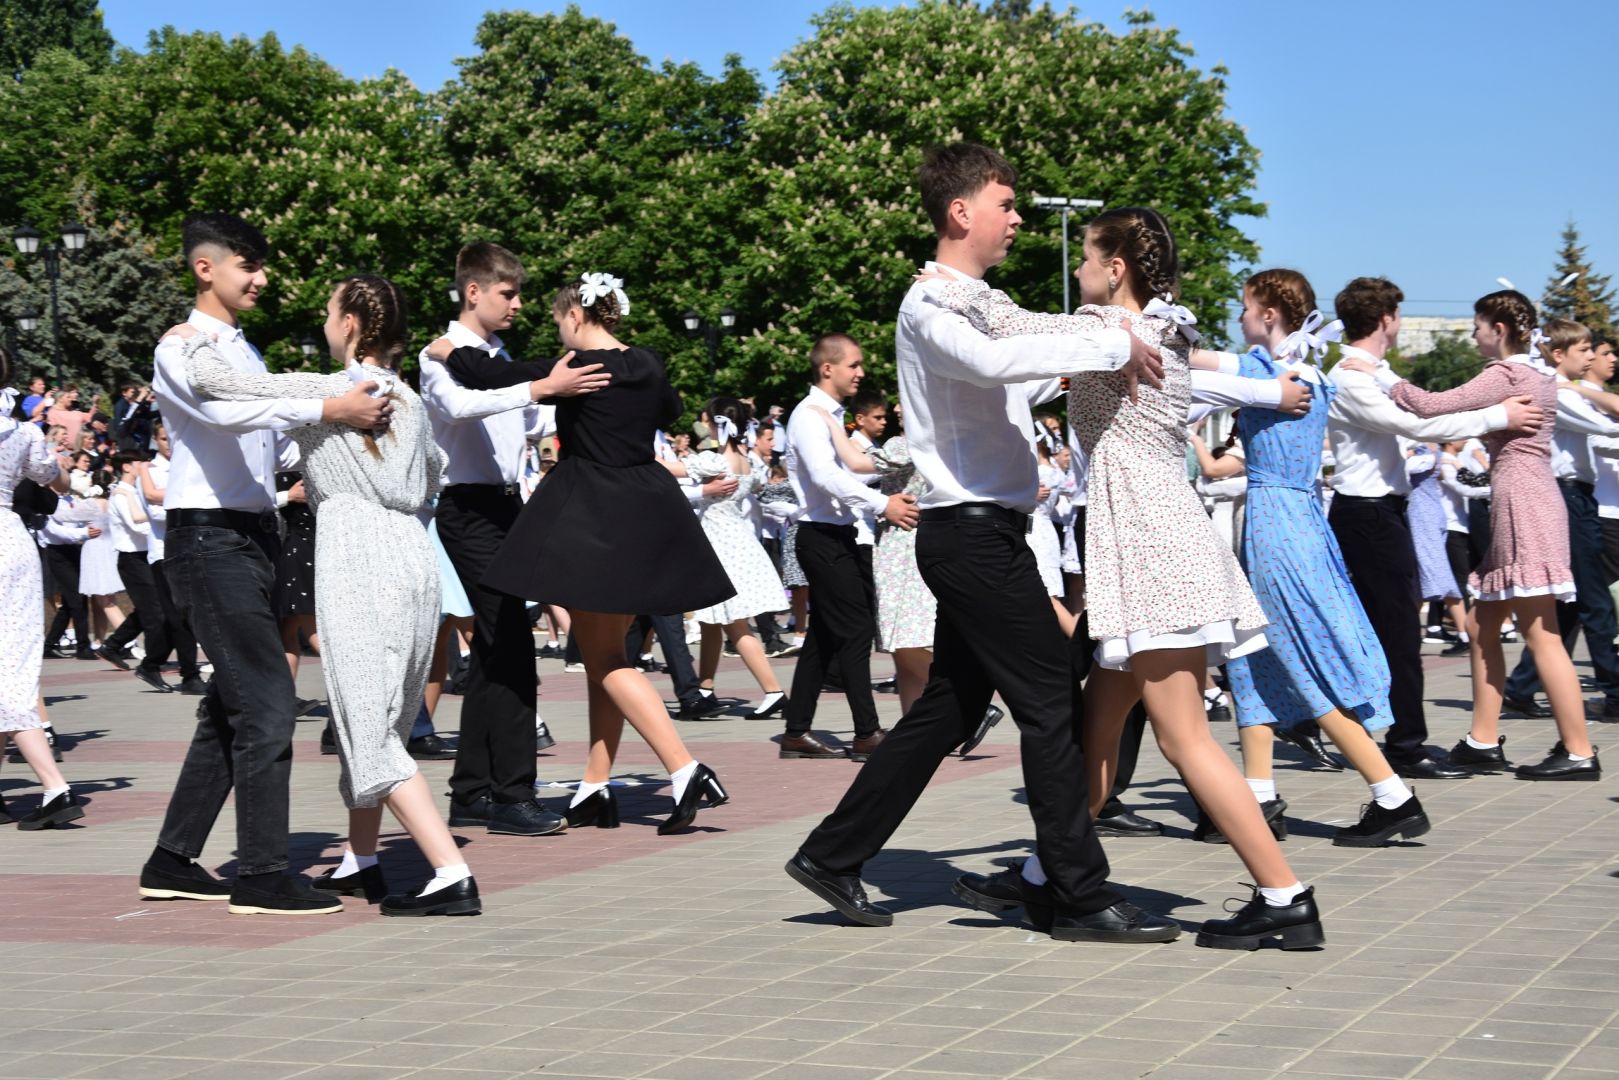 Почти 1,5 тысячи юношей и девушек исполнили вальс Победы в Шпаковском округе